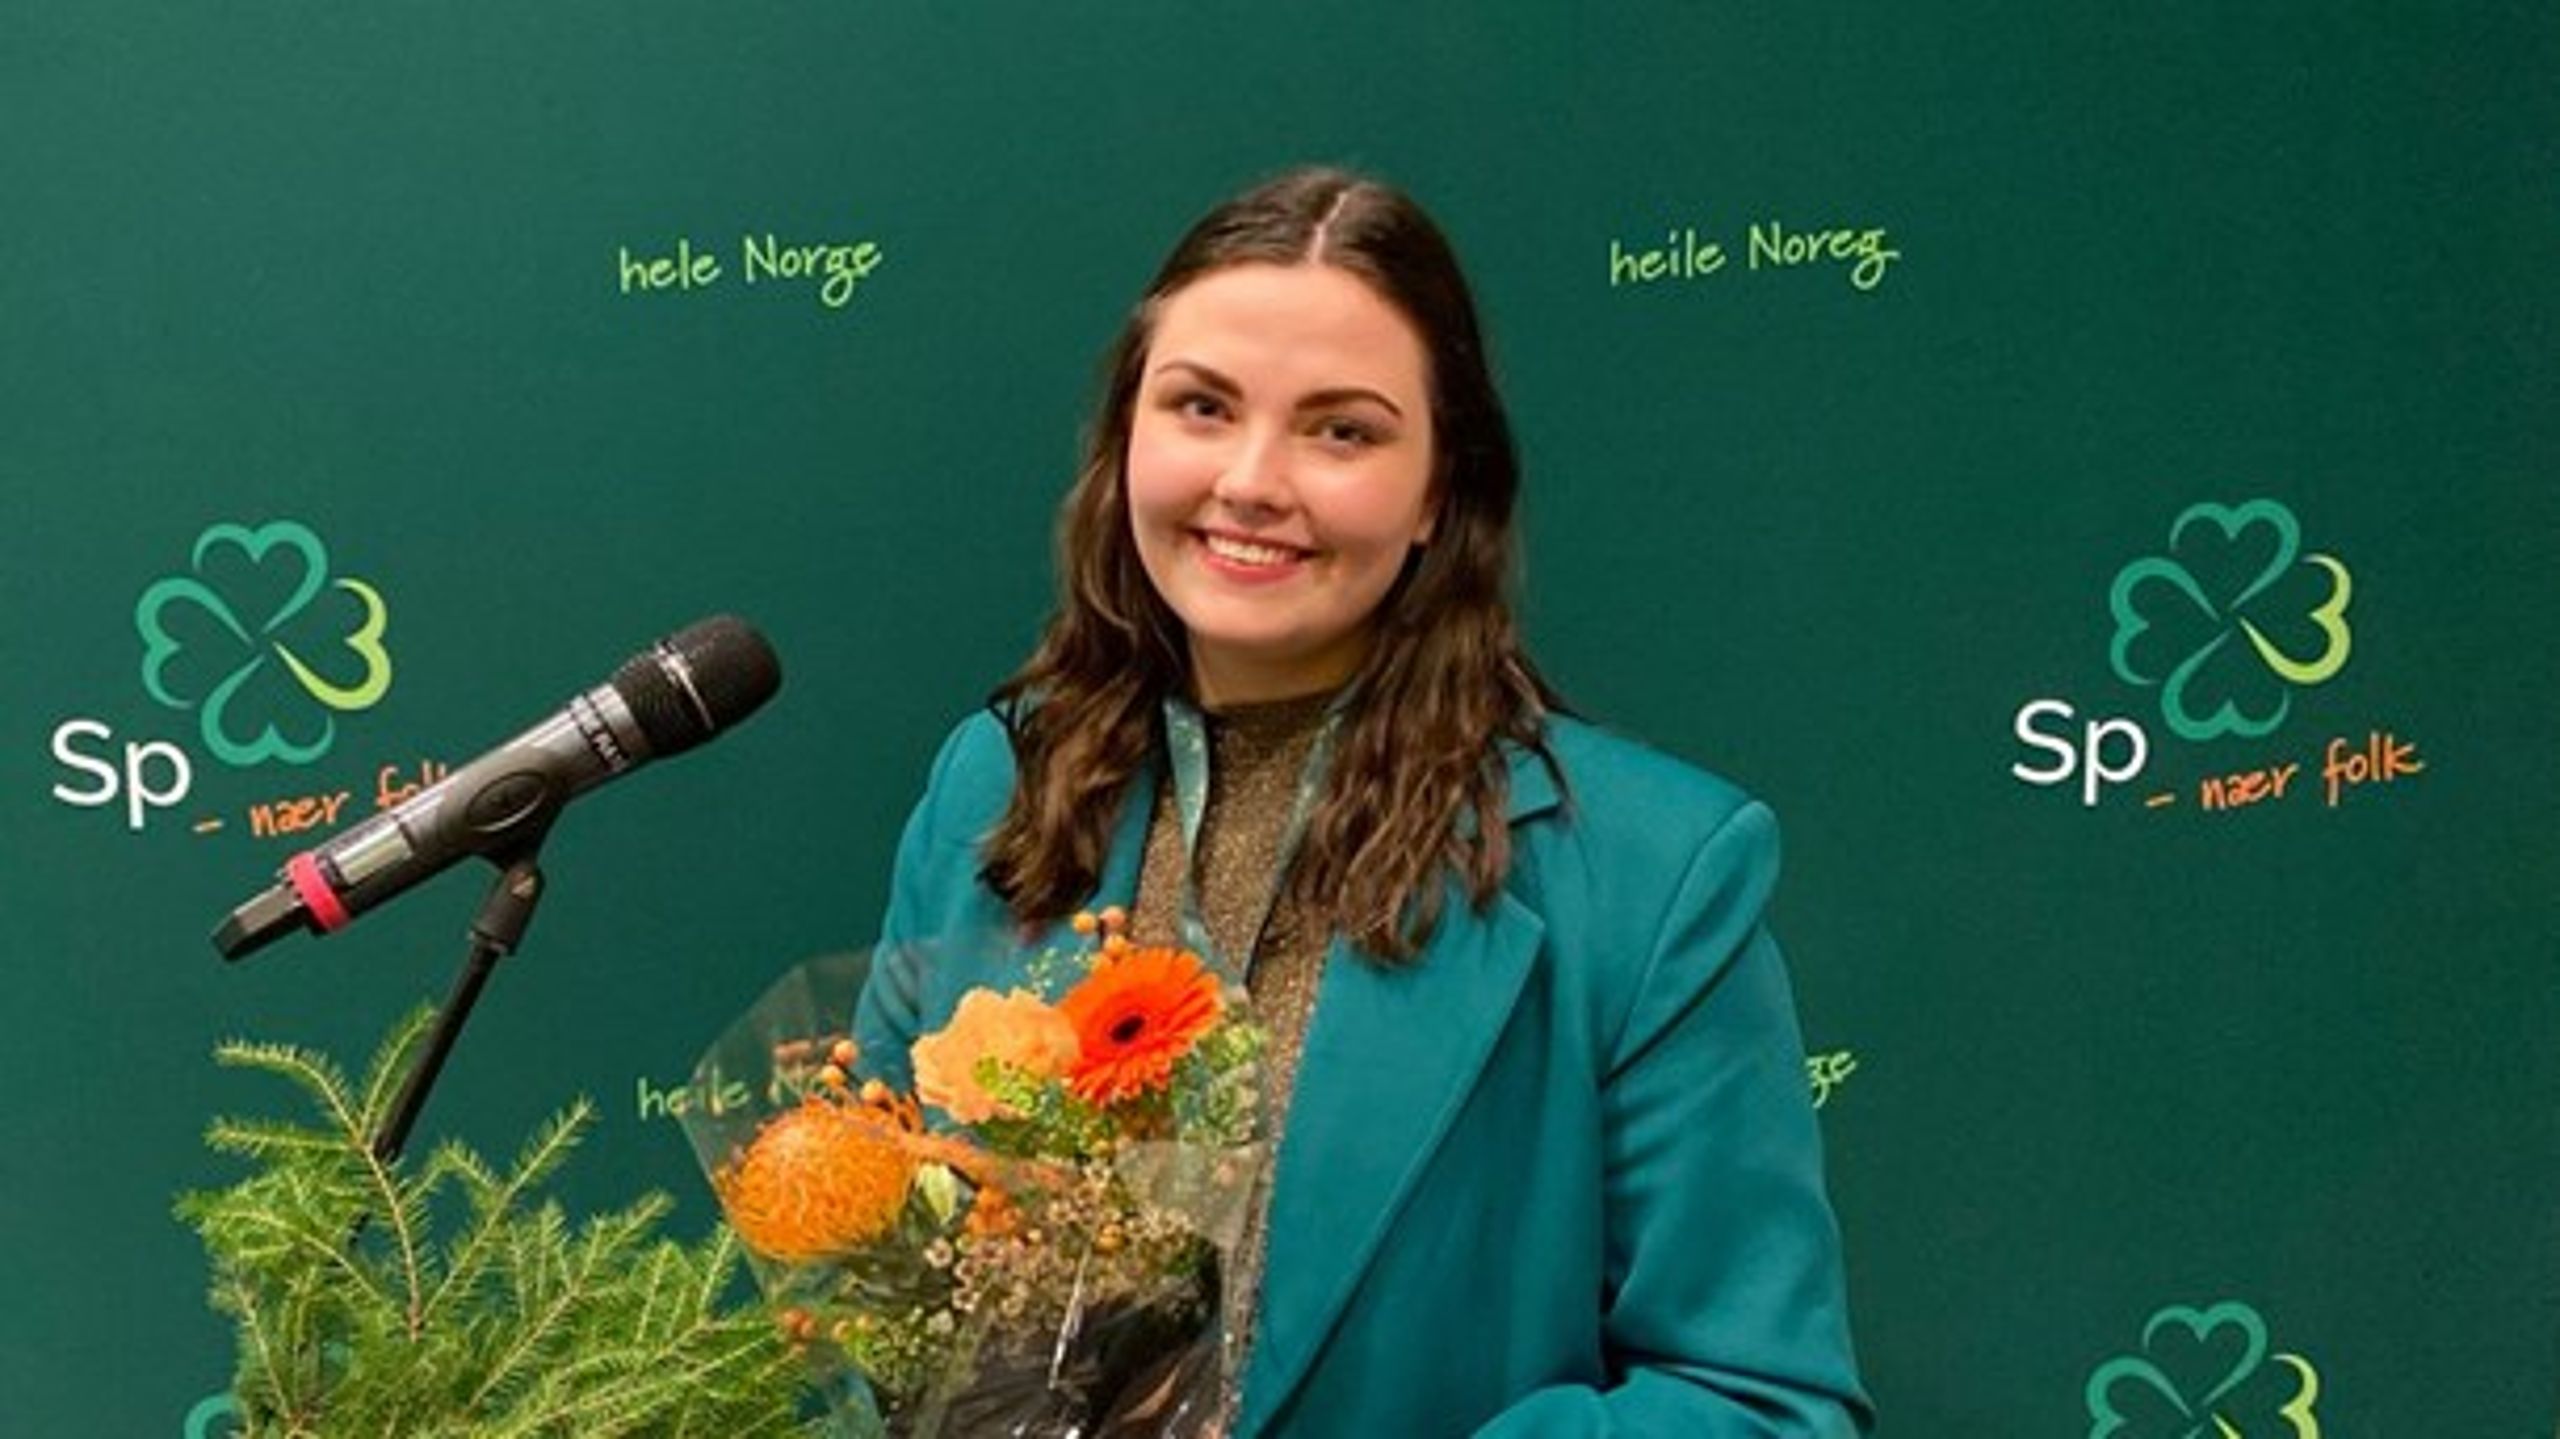 Andrine Hanssen-Seppola fra Tromsø ble under&nbsp;helgens landsmøte valgt som ny leder i Senterungdommen. Hun blir dermed den yngste lederen i Senterungdommen noensinne.